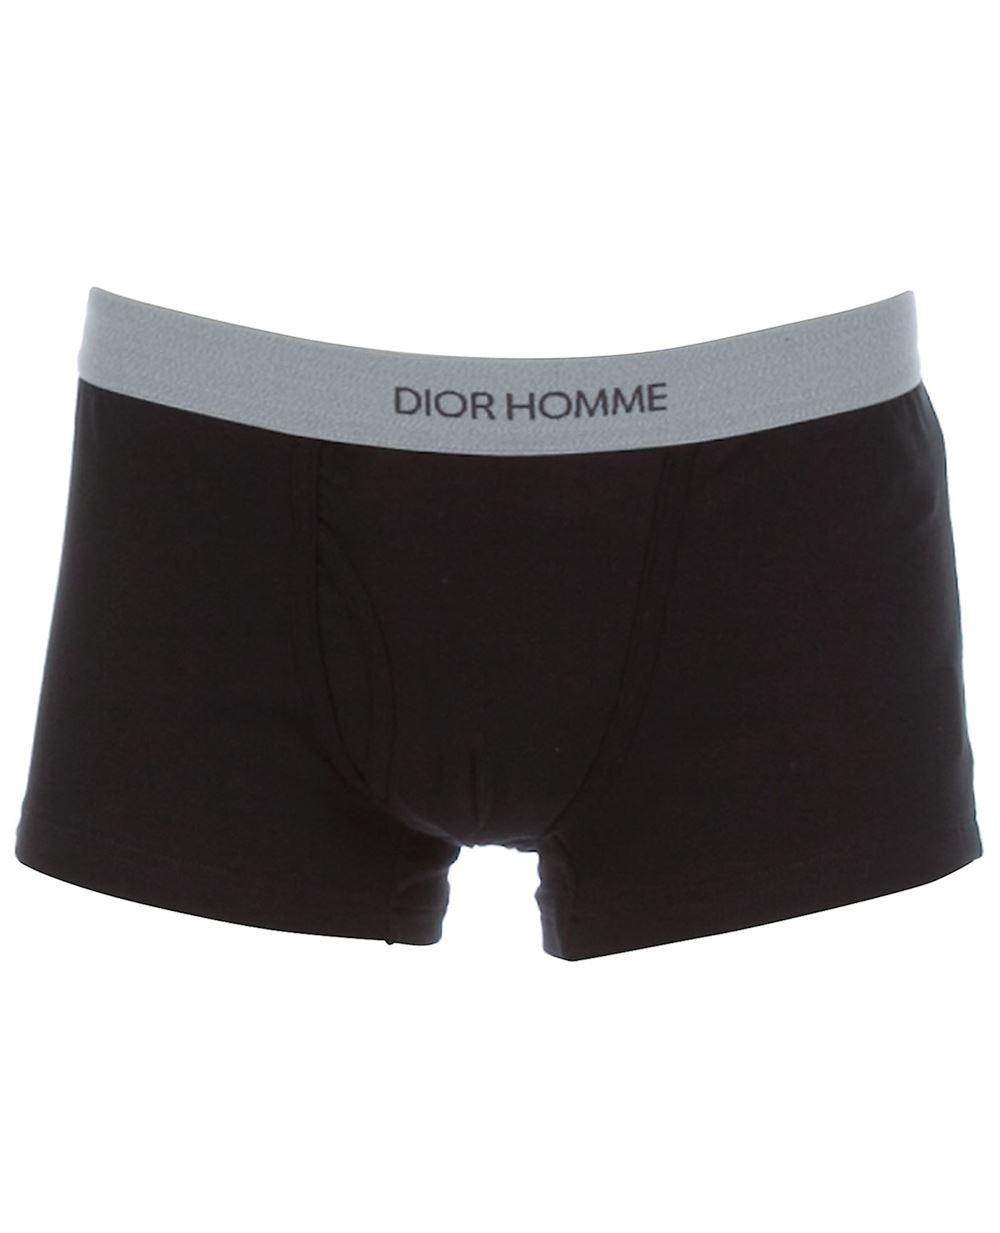 Dior Homme Logo-Detailed Boxer Shorts in Black for Men - Lyst